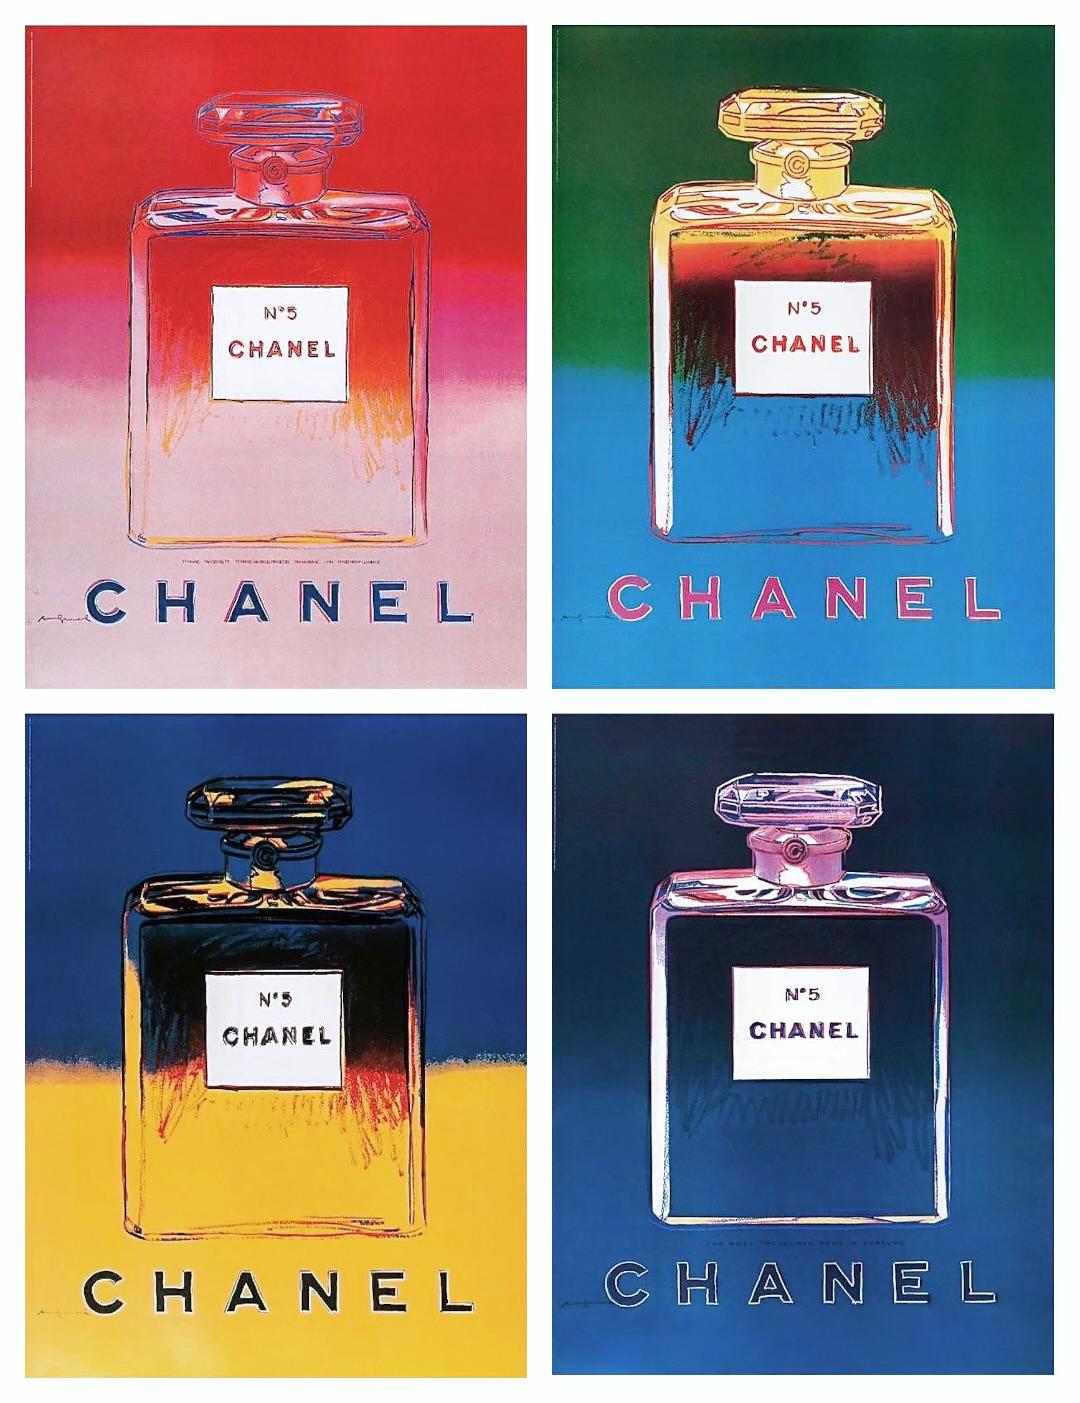 Chanel Suite (four artworks)